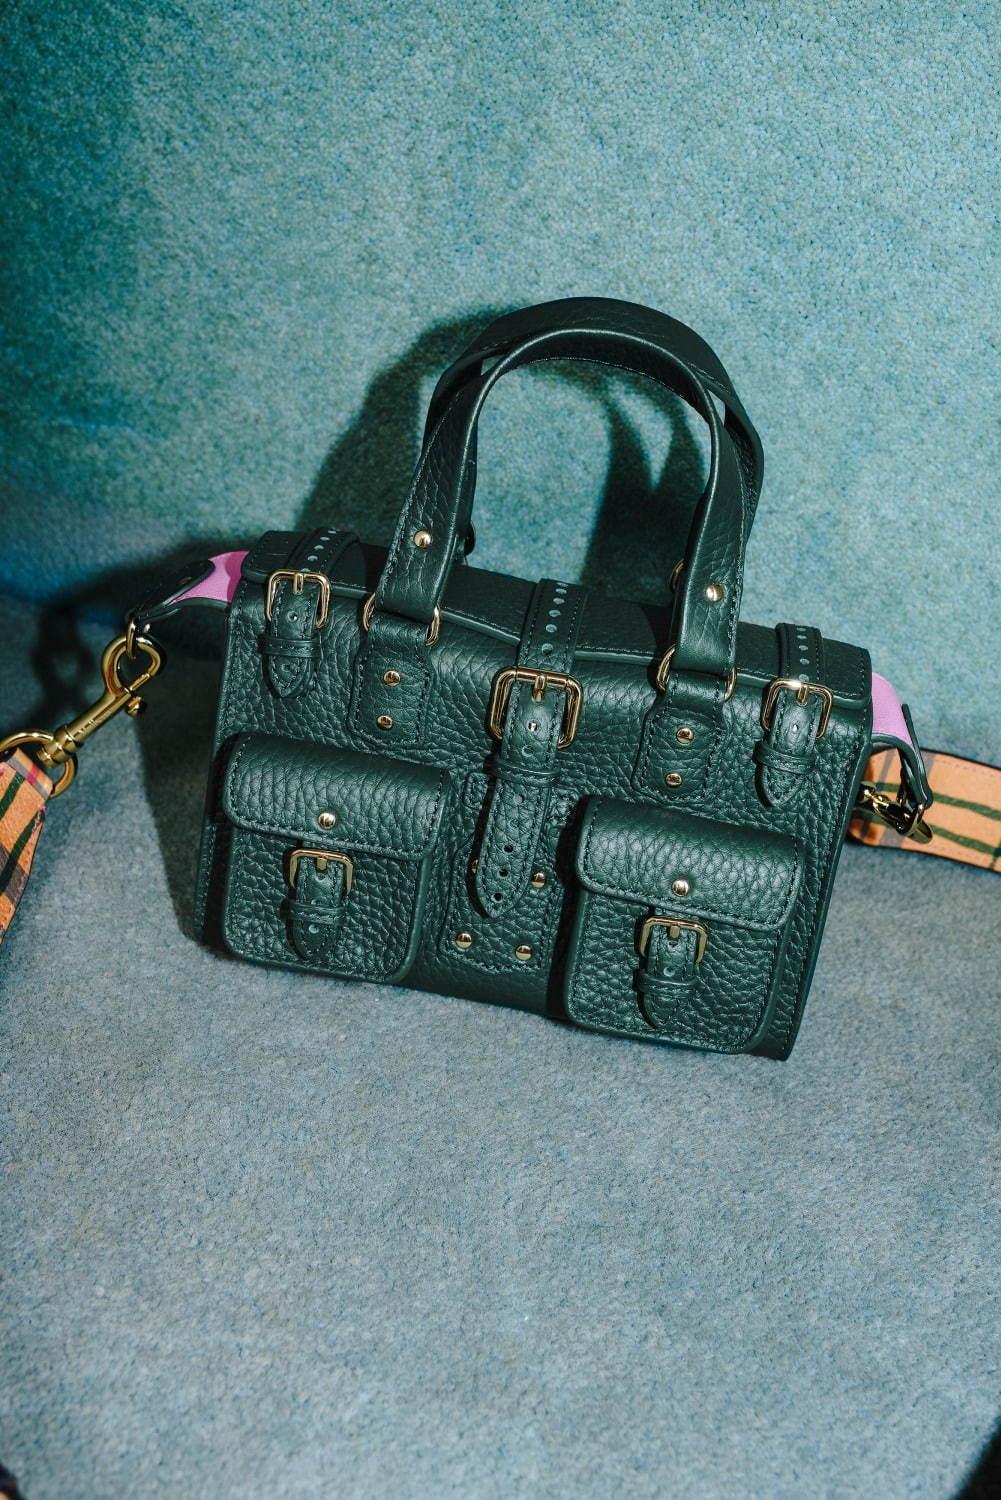 マルベリー名作バッグが“ミニサイズ”で復刻、旅行鞄イメージの「ロクサンヌ」&人気「アレクサ」など コピー